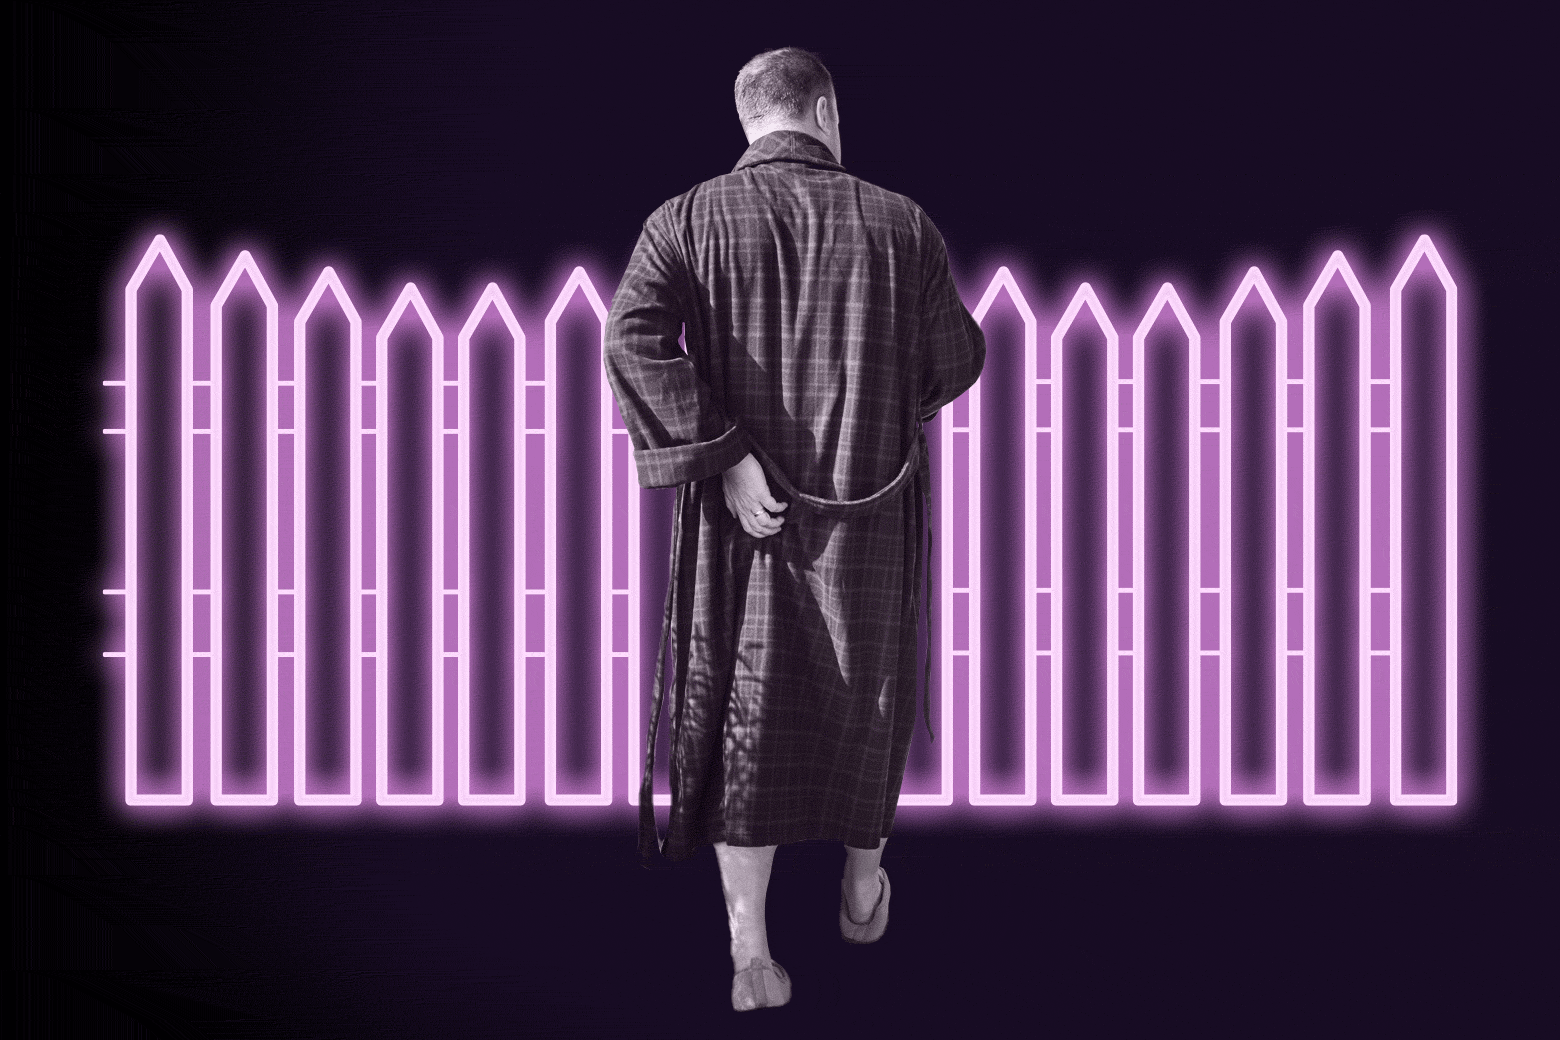 Man in a bathrobe walking toward a fence.